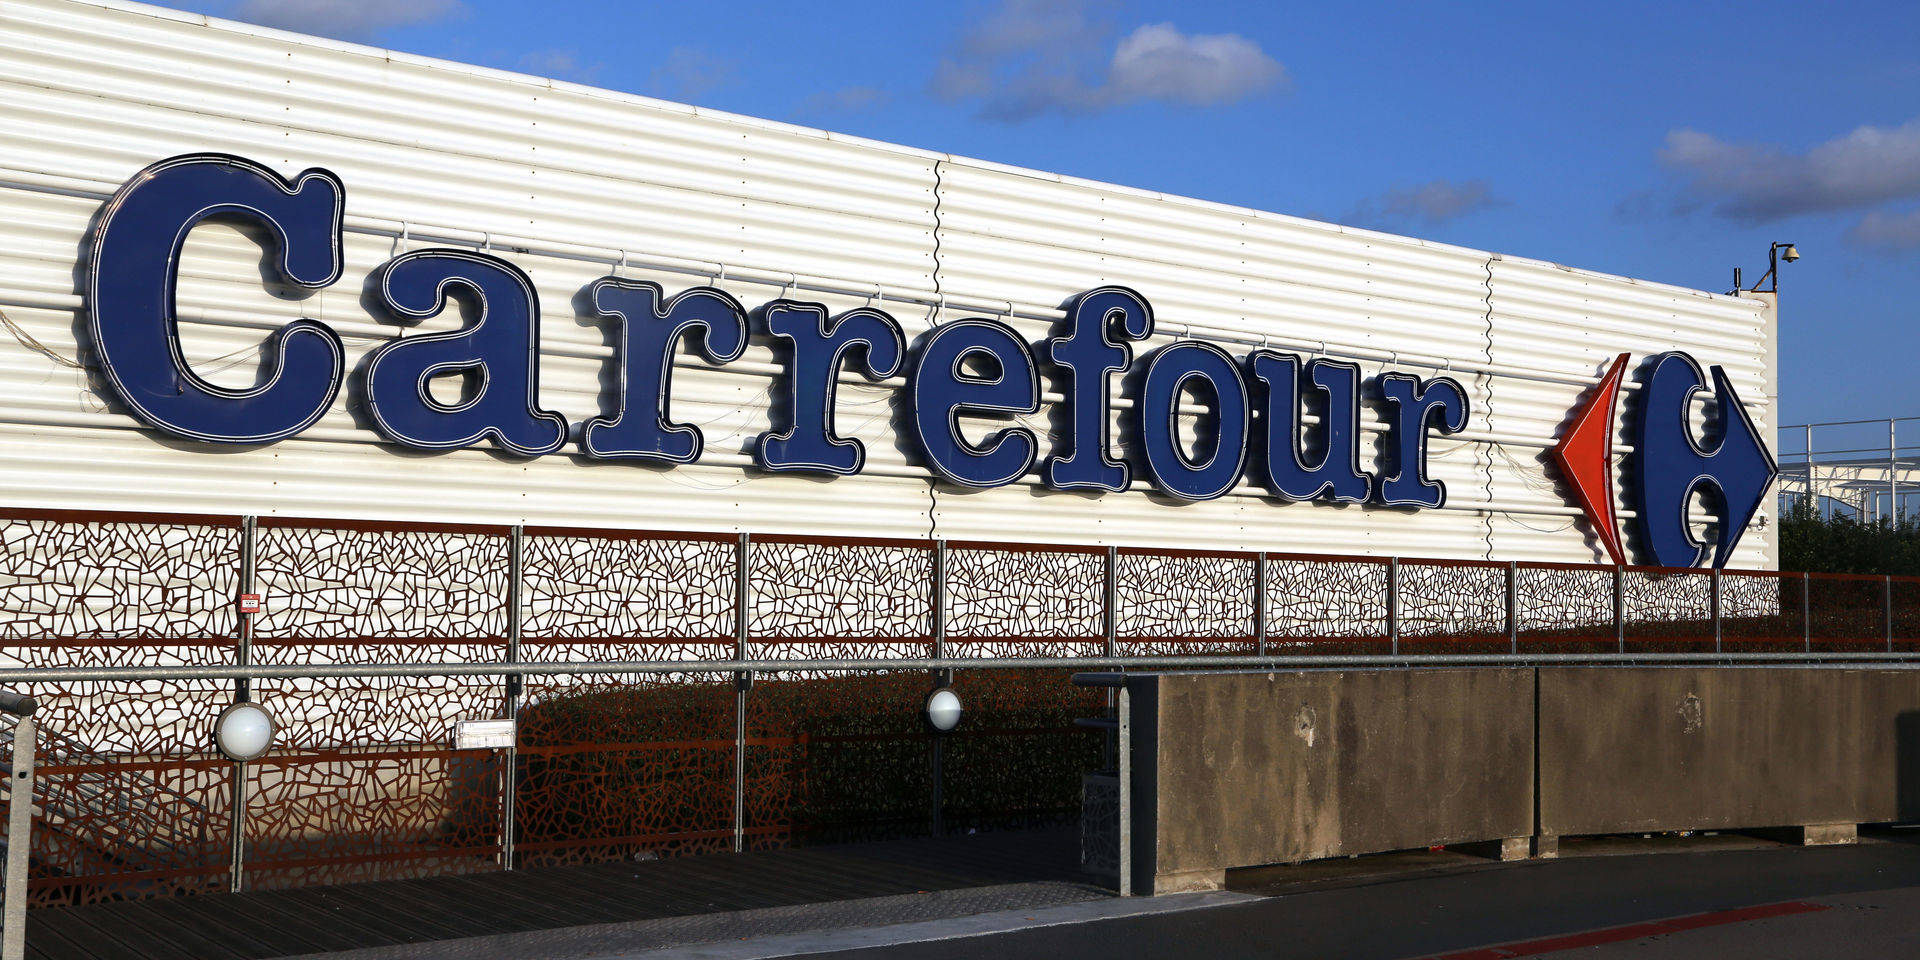 Carrefour da la bienvenida la Navidad en tu armario con el más ambientado en época - Economía Digital